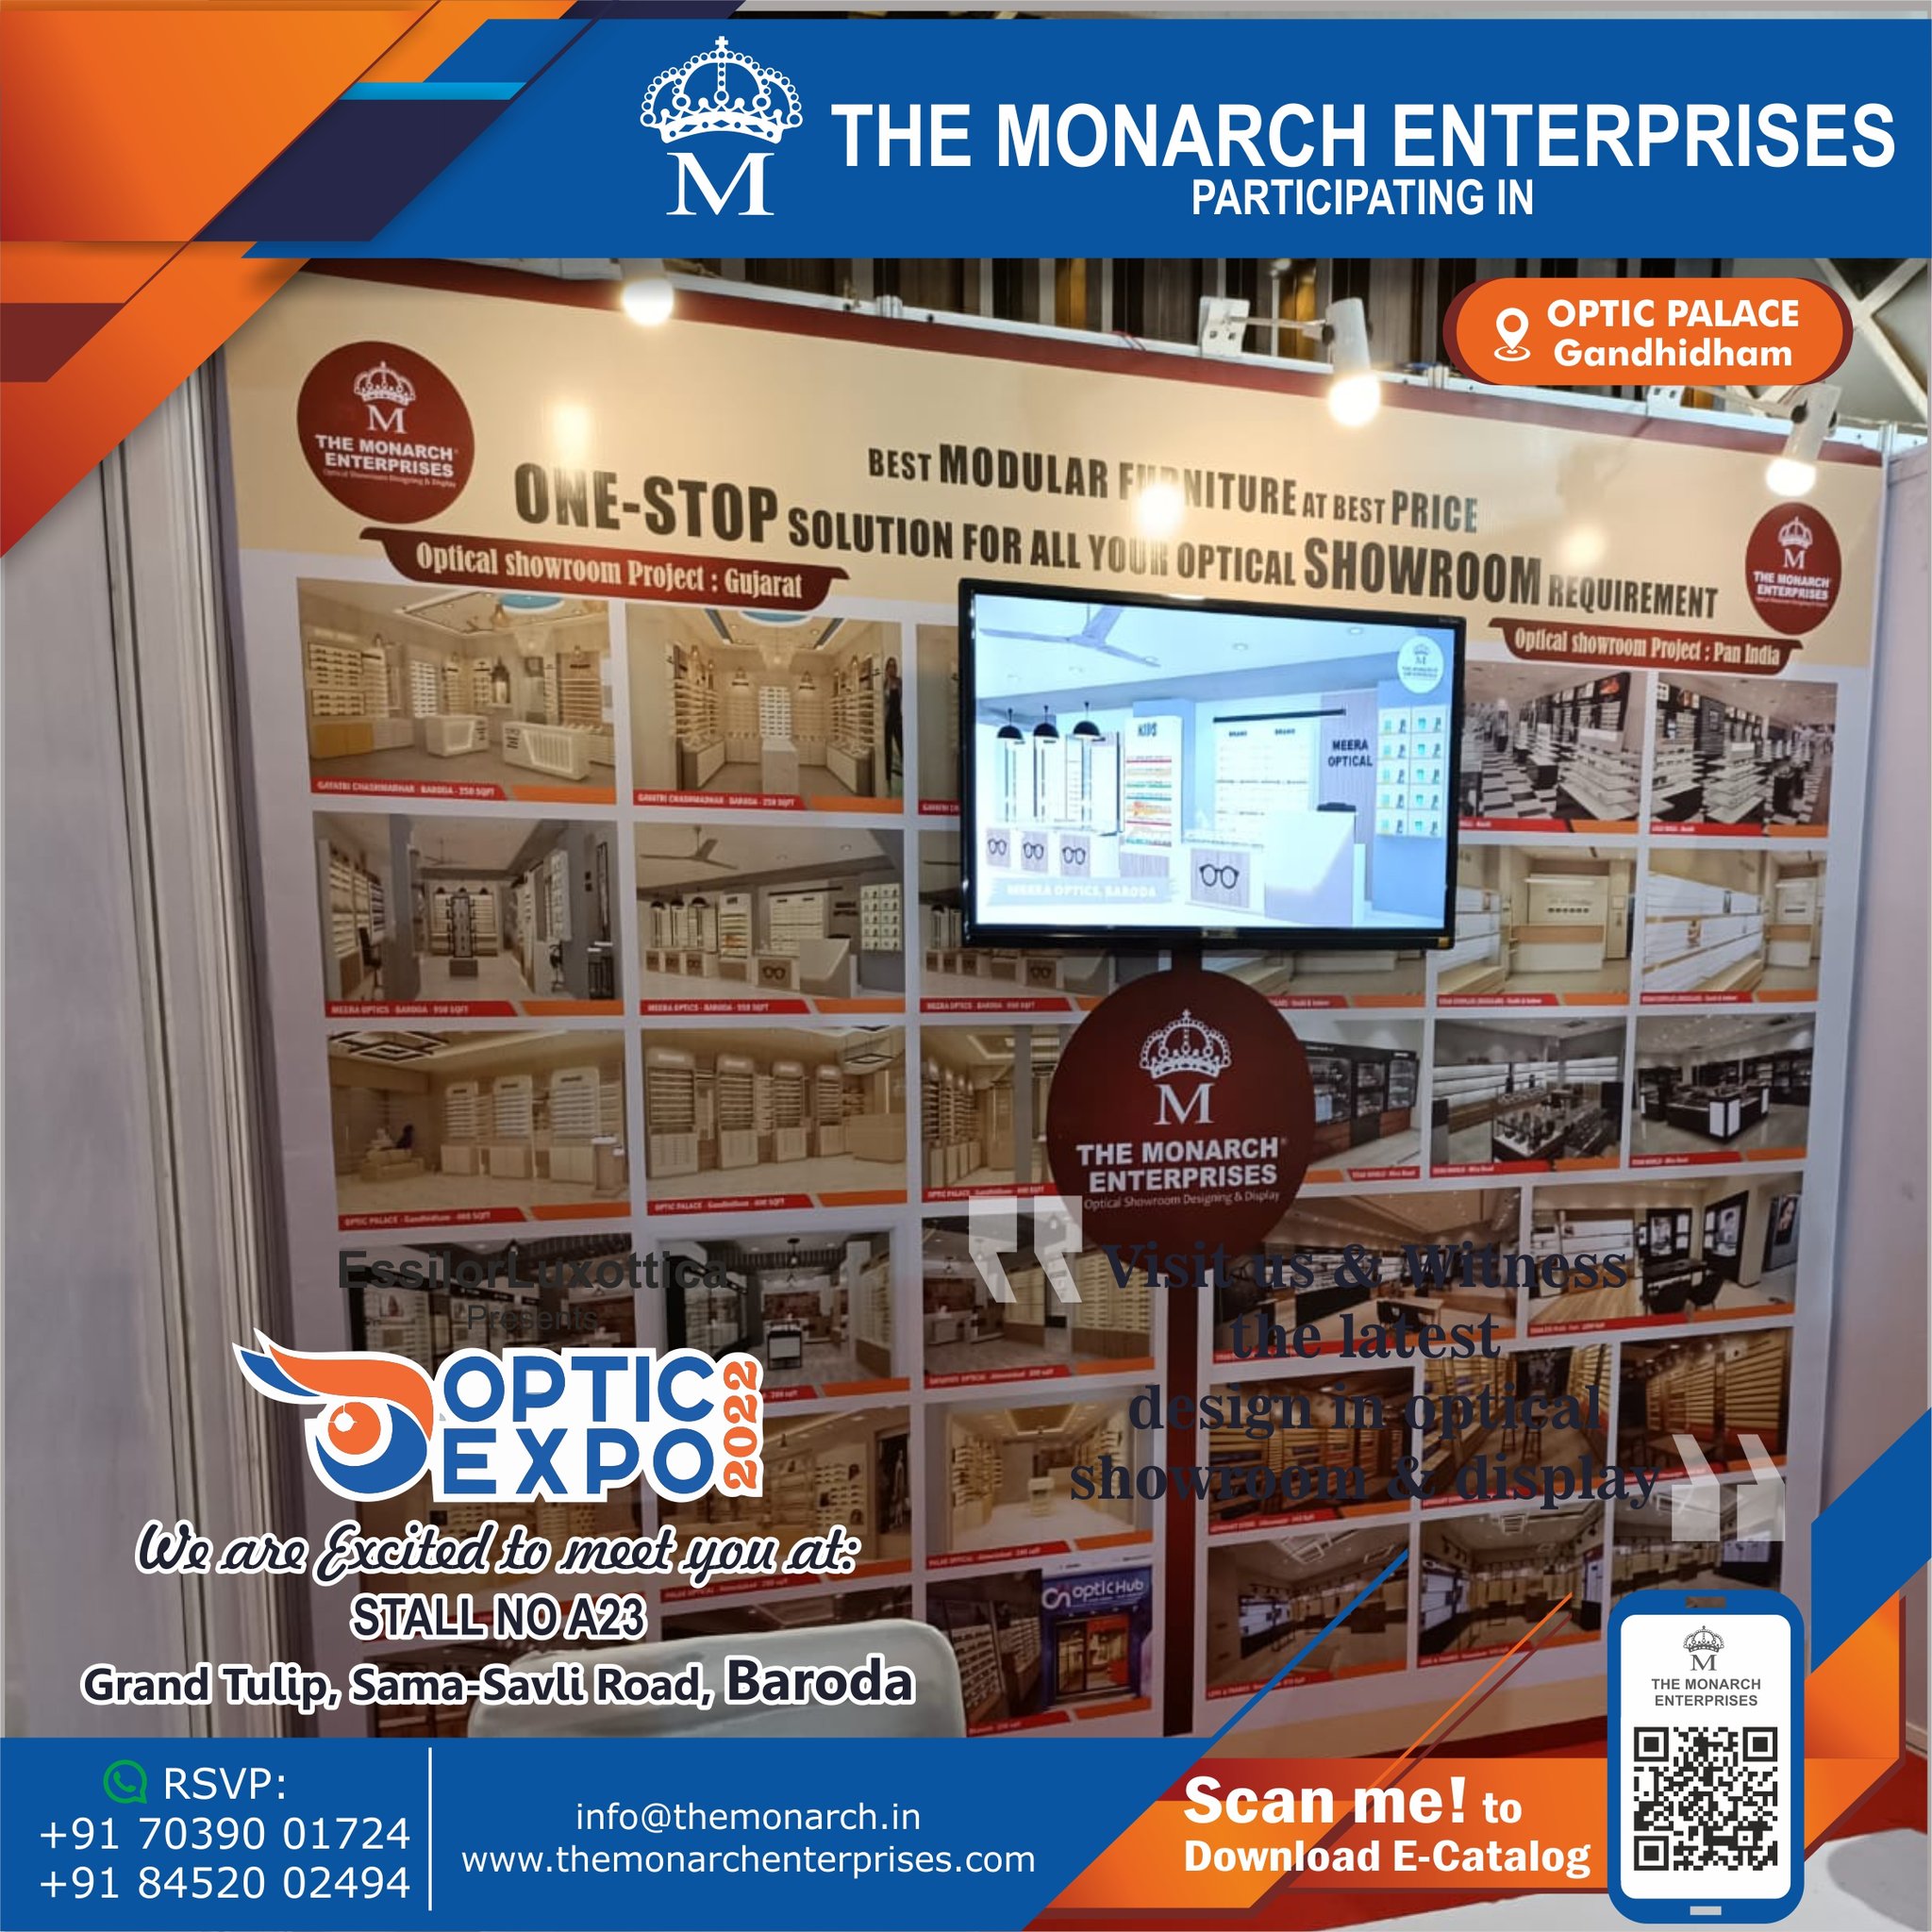 The Monarch Enterprises